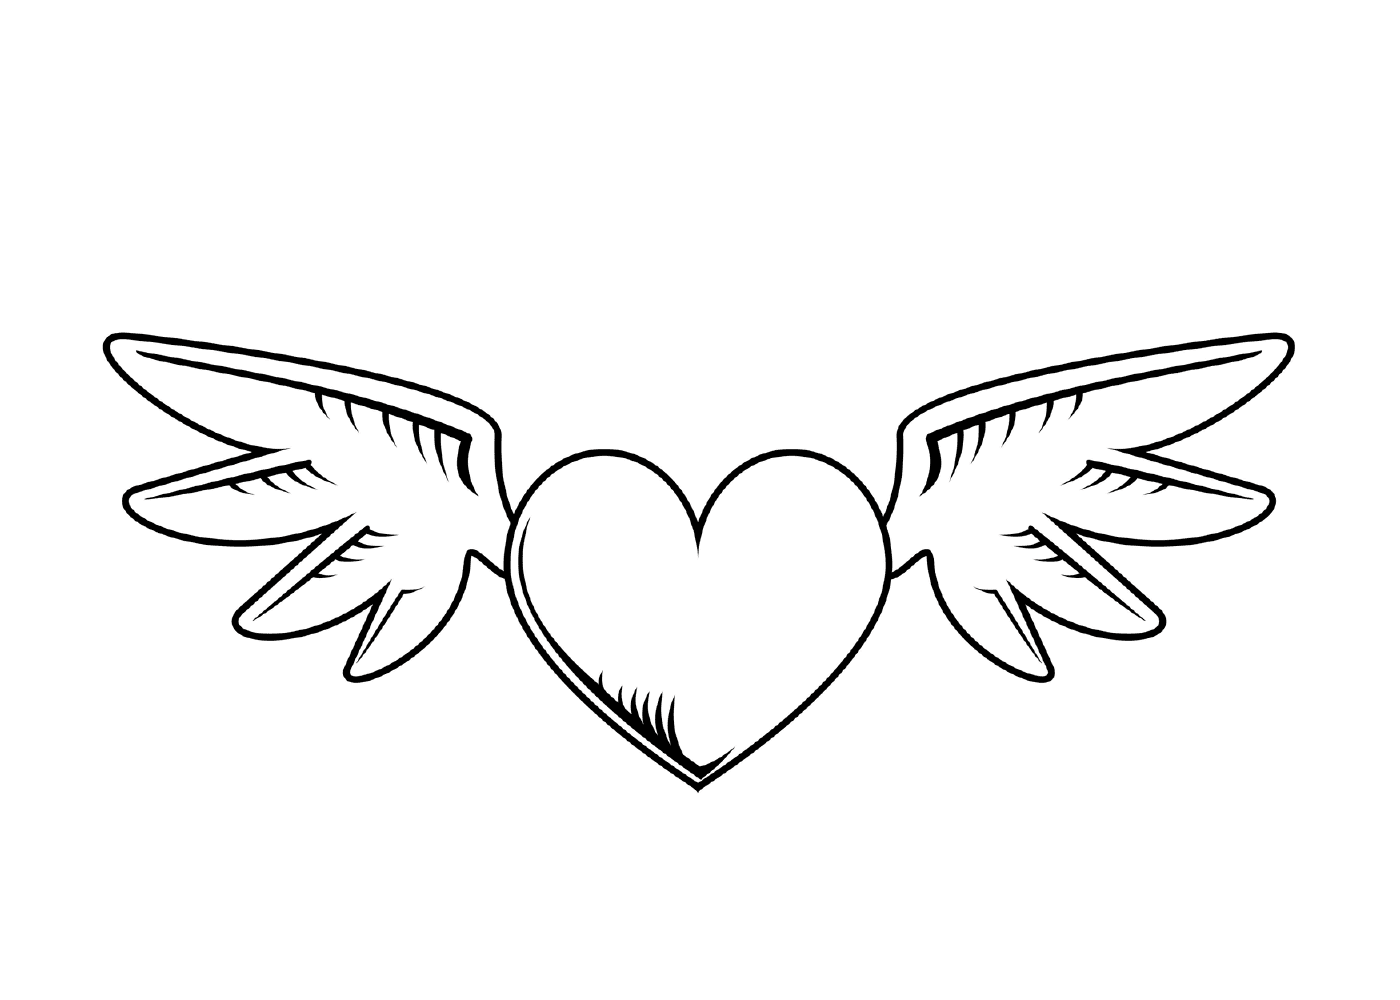  Coração com asas para o Dia dos Namorados 